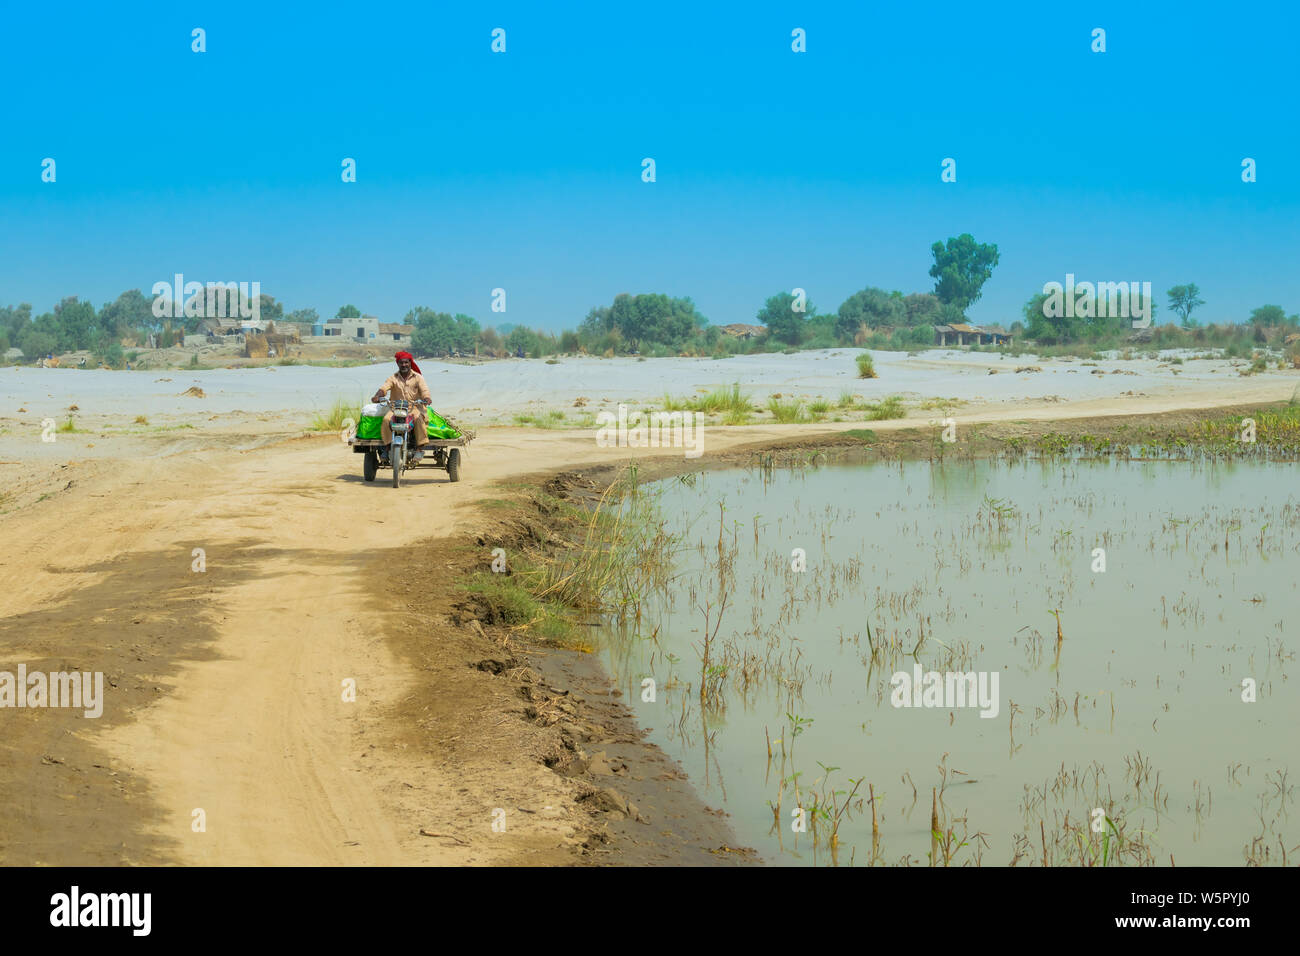 Punjab Pakistan-June,23,2019:un homme non identifié roulant a moto rickshaw dans une zone touchée par les inondations,fond de ciel bleu. Banque D'Images